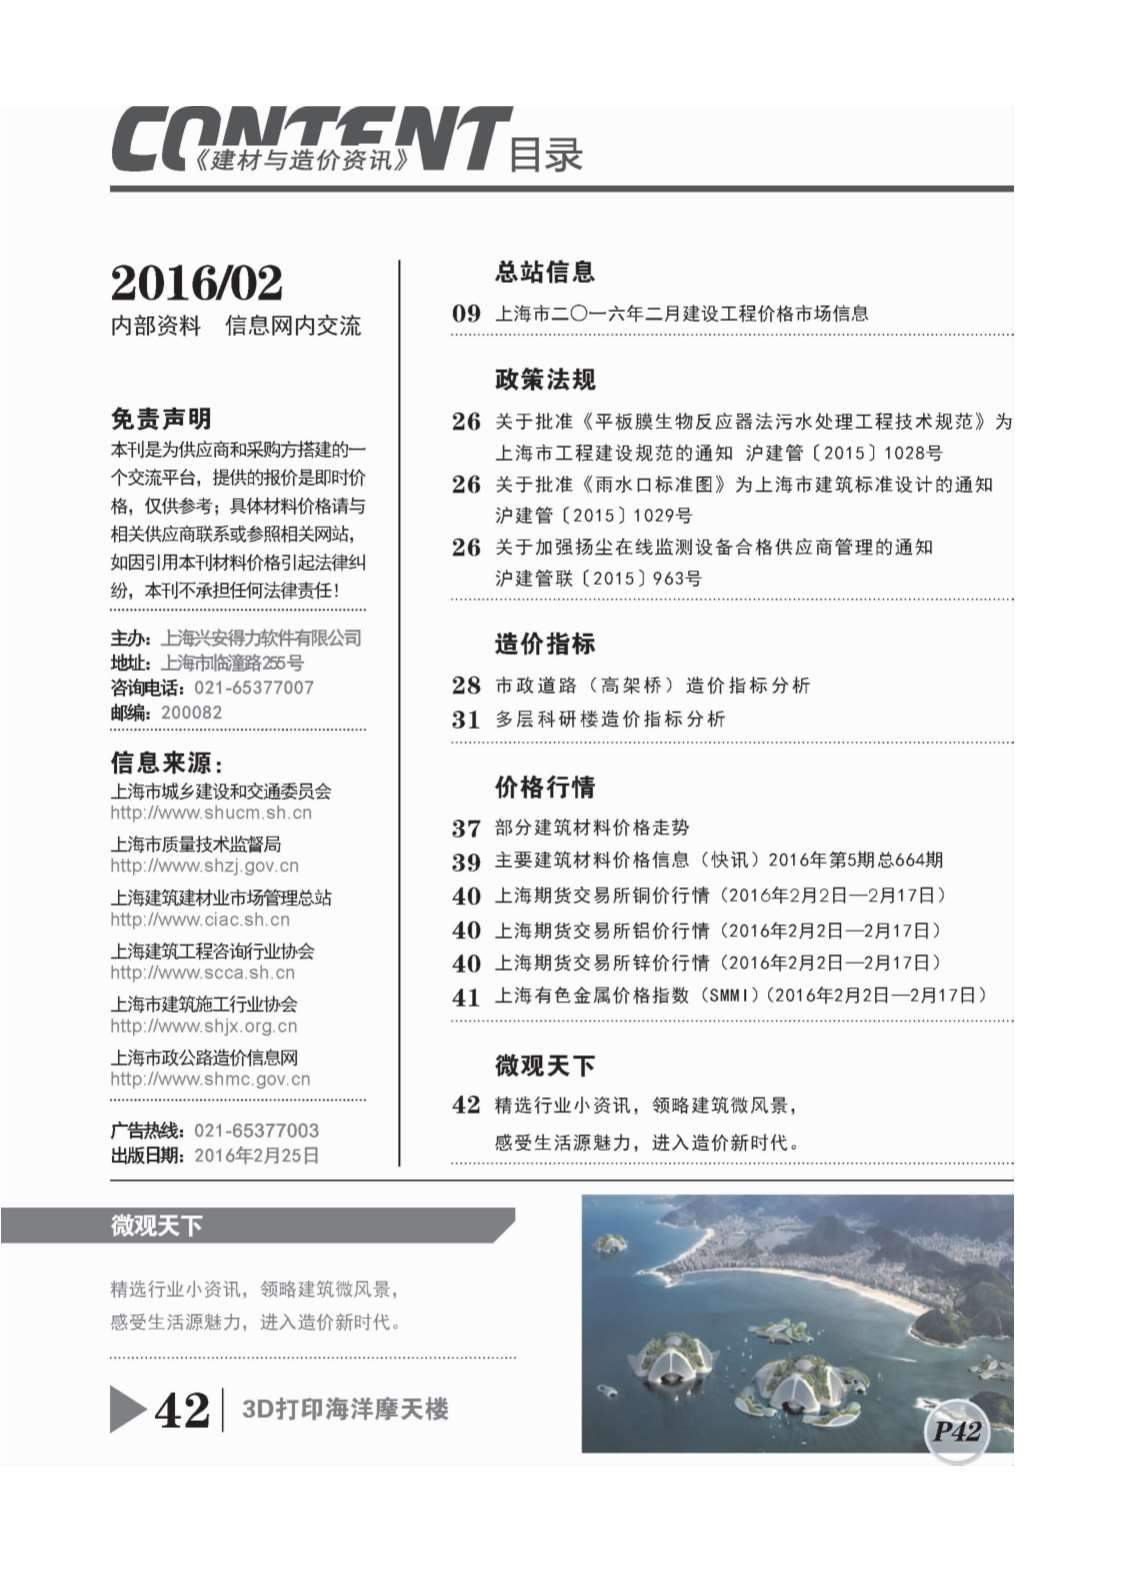 上海市2016年2月建设工程造价信息